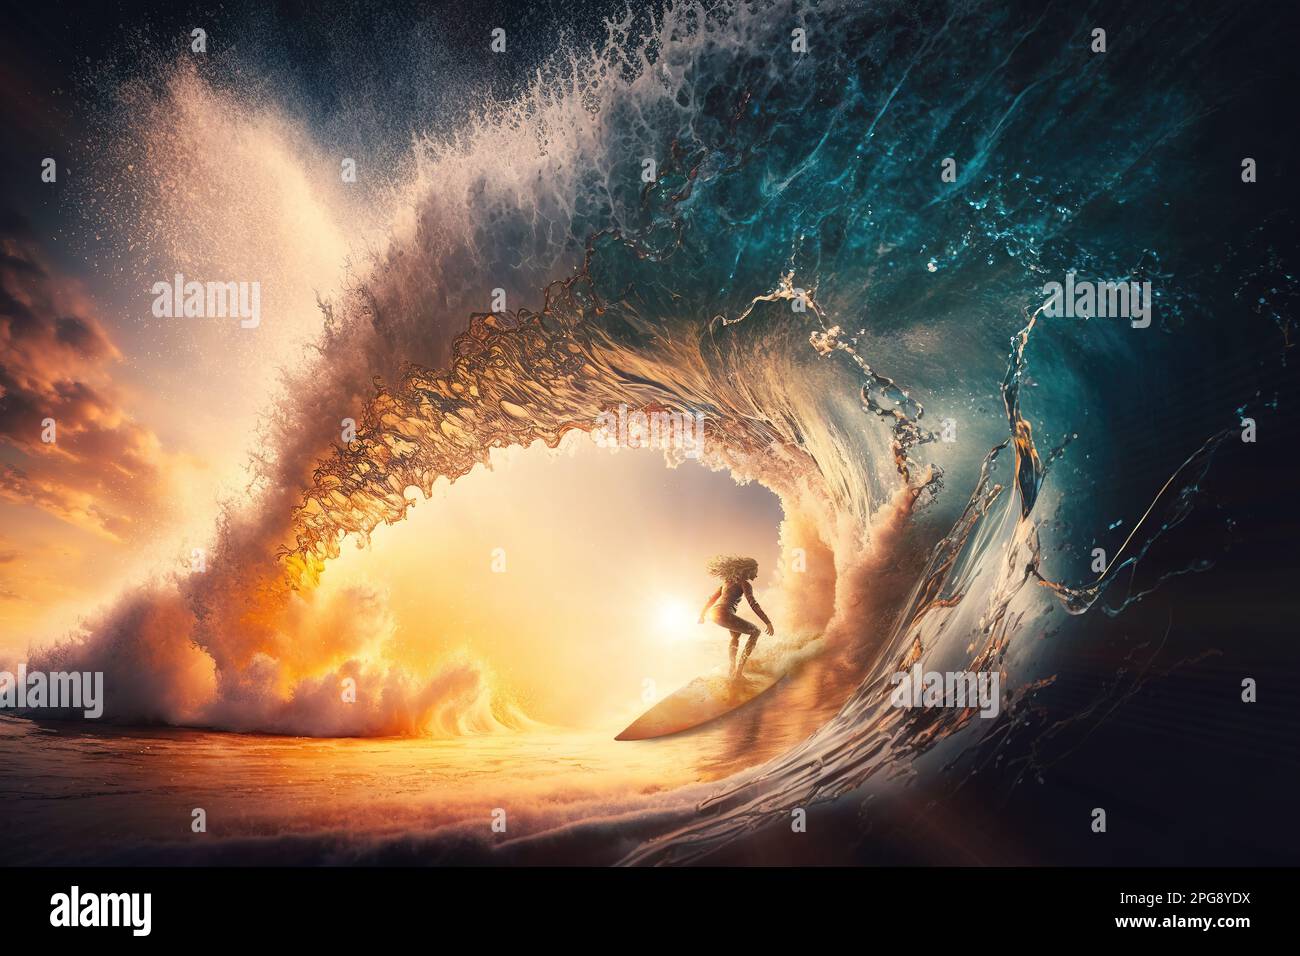 Eine Frau surft auf einer unglaublichen großen Welle. Composite mit verschiedenen Elementen, die mit generativer KI erstellt wurden Stockfoto